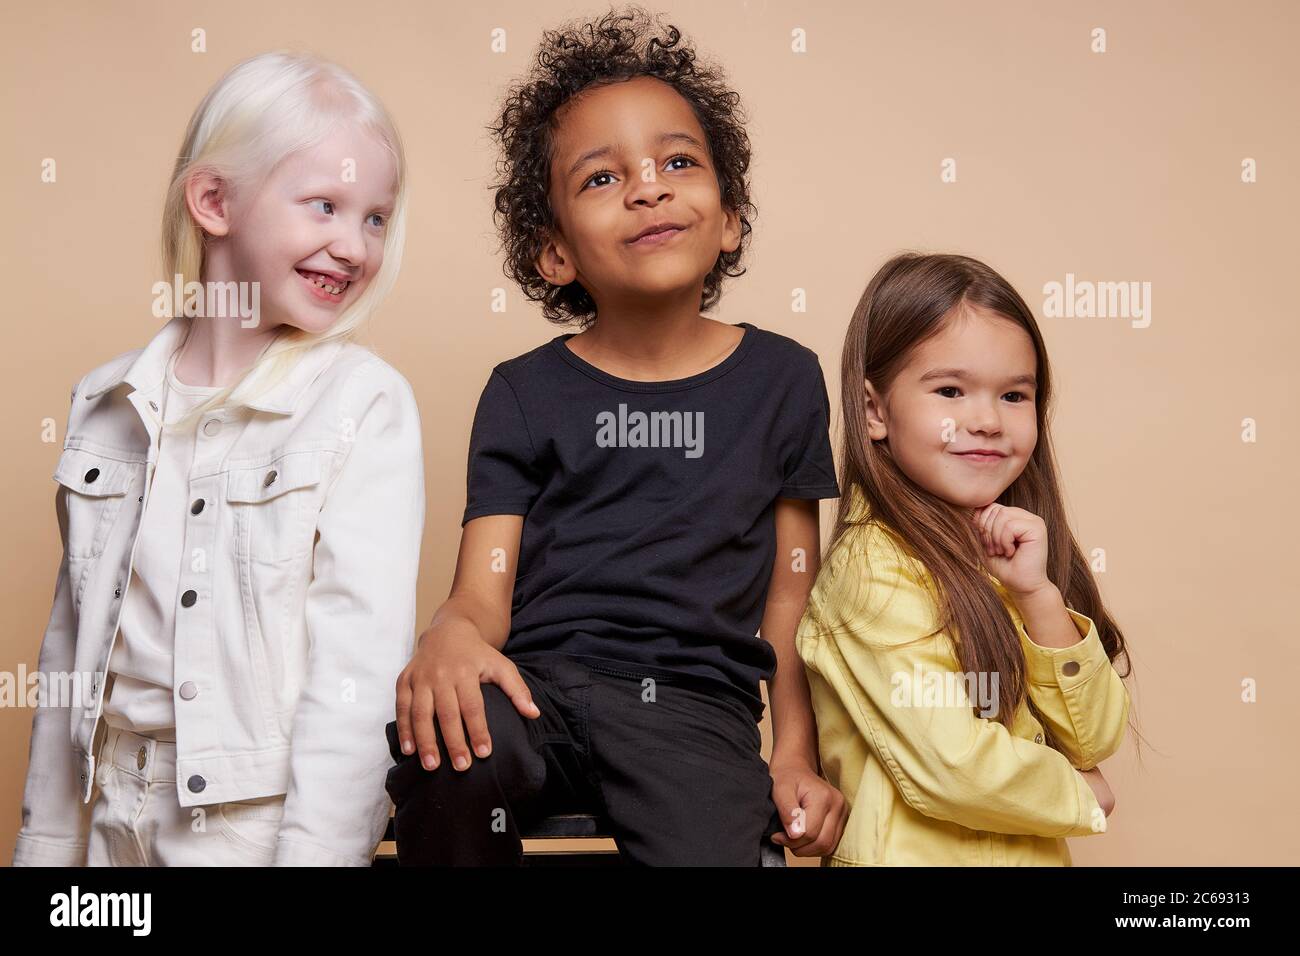 portrait d'adorables enfants divers isolés. multiraciaux se tiennent ensemble, amitié étroite entre eux. diversité des gens, enfants, beauté naturelle Banque D'Images